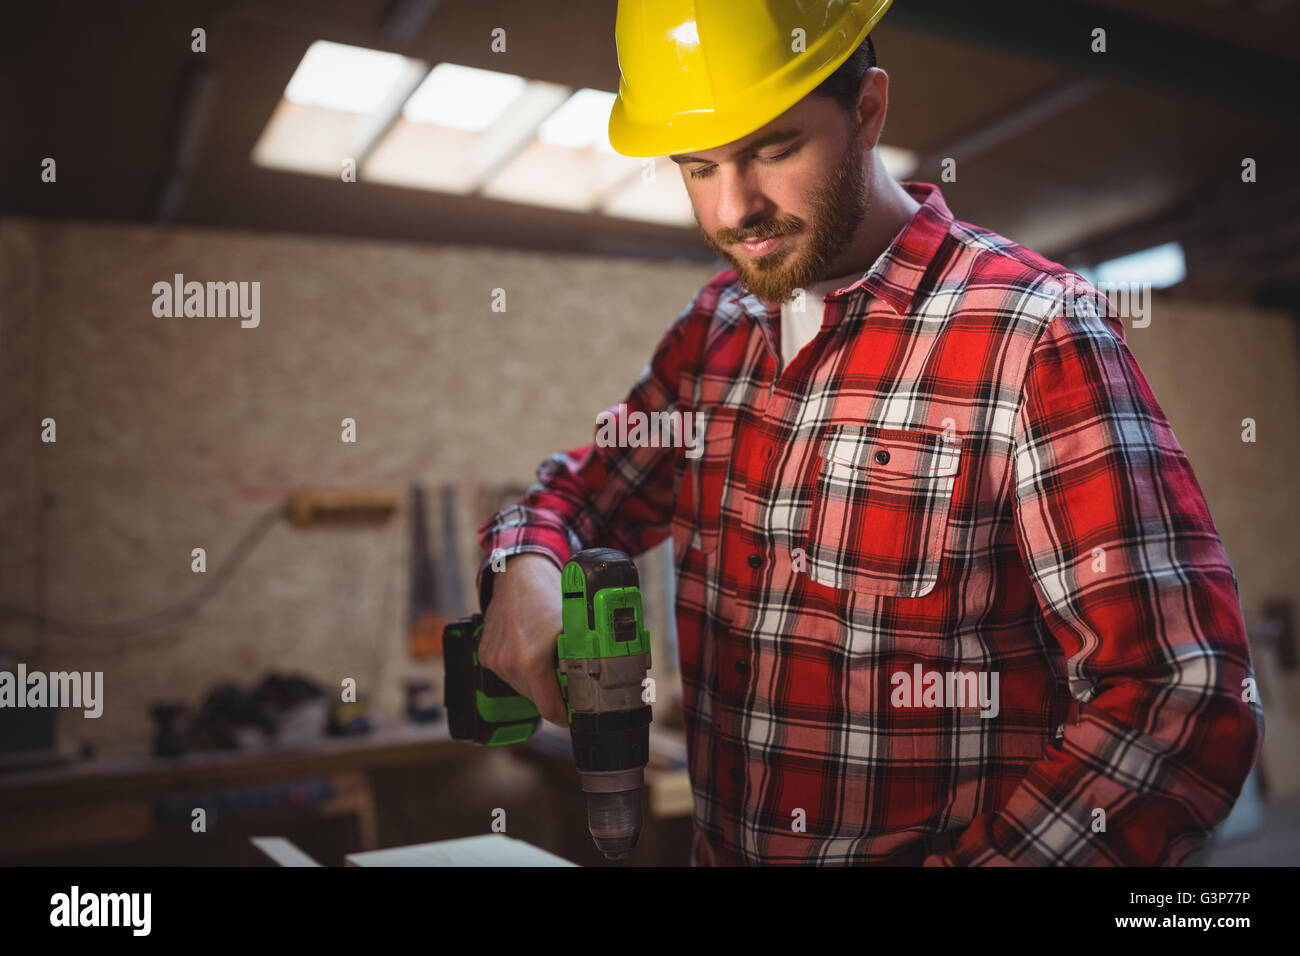 Carpenter using drill machine Stock Photo